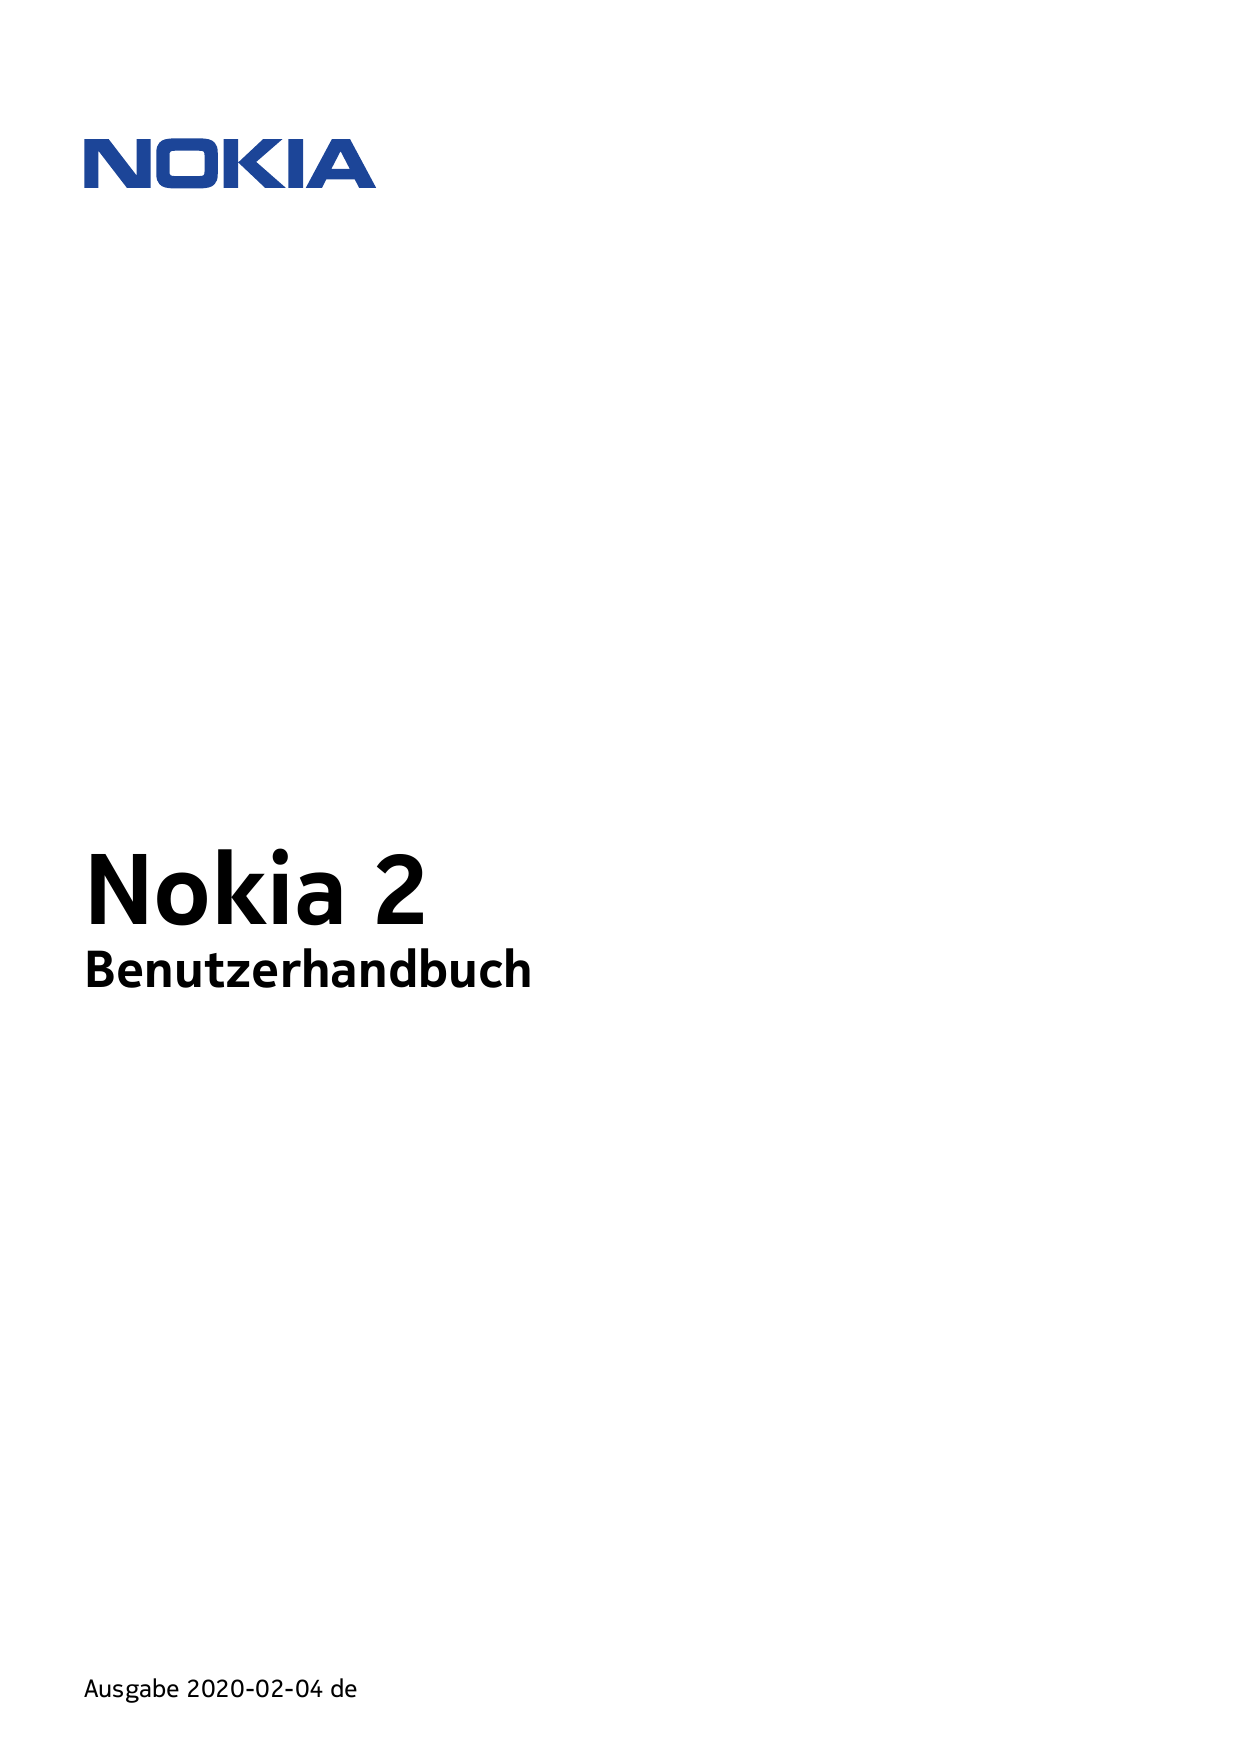 Nokia 2BenutzerhandbuchAusgabe 2020-02-04 de